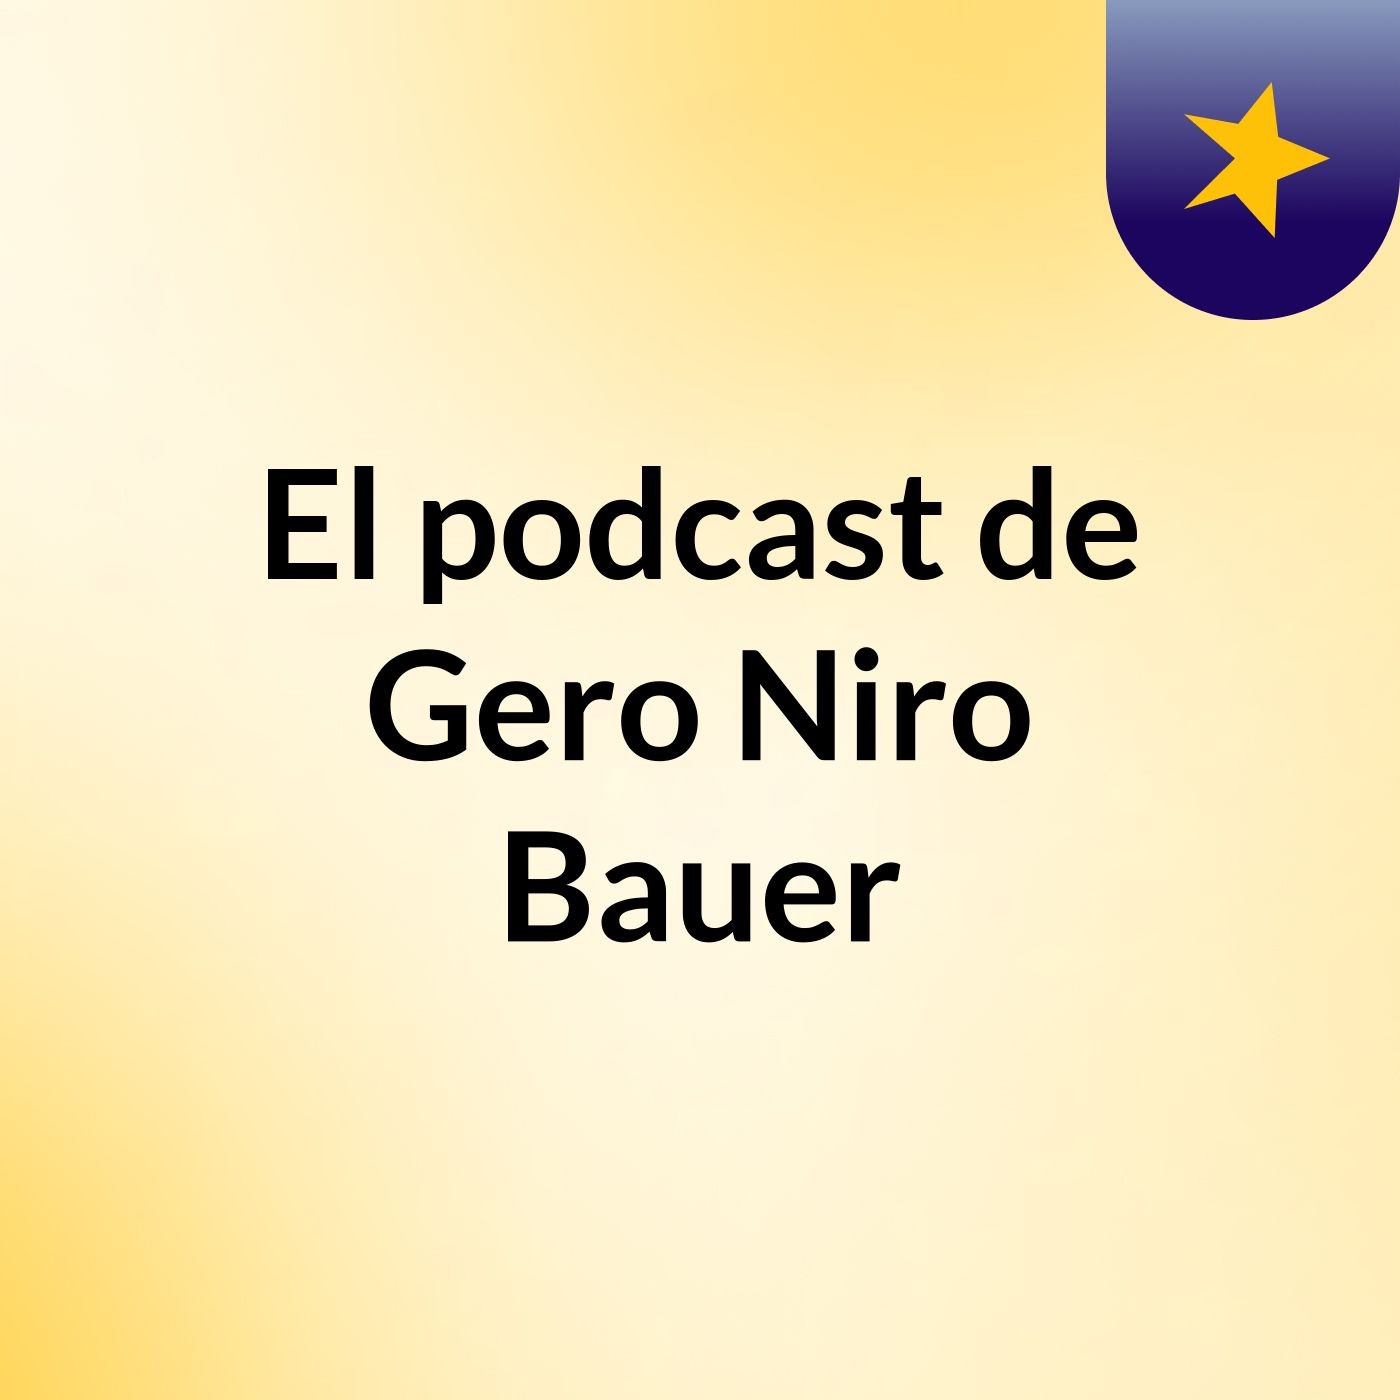 El podcast de Gero Niro Bauer